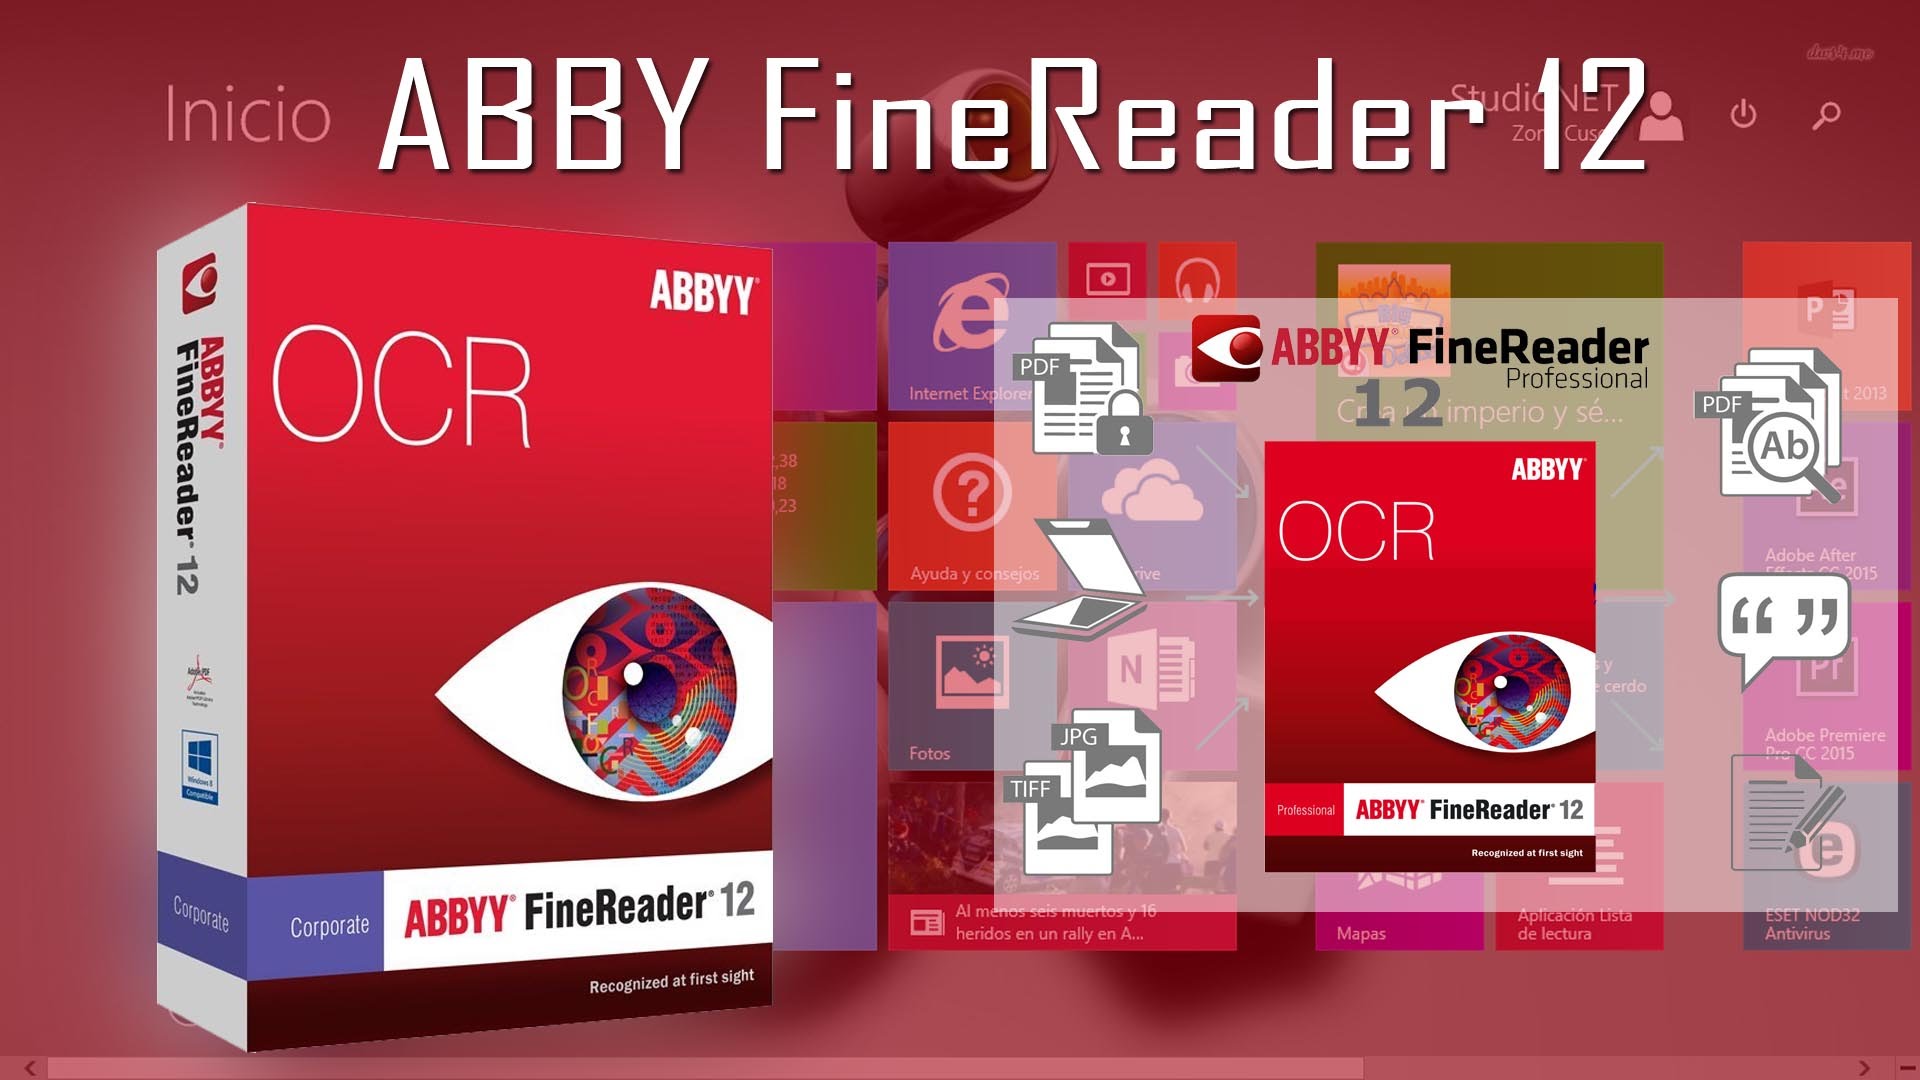 ABBYY FineReader 14 Crack Full Serial Number Latest Free [2019]